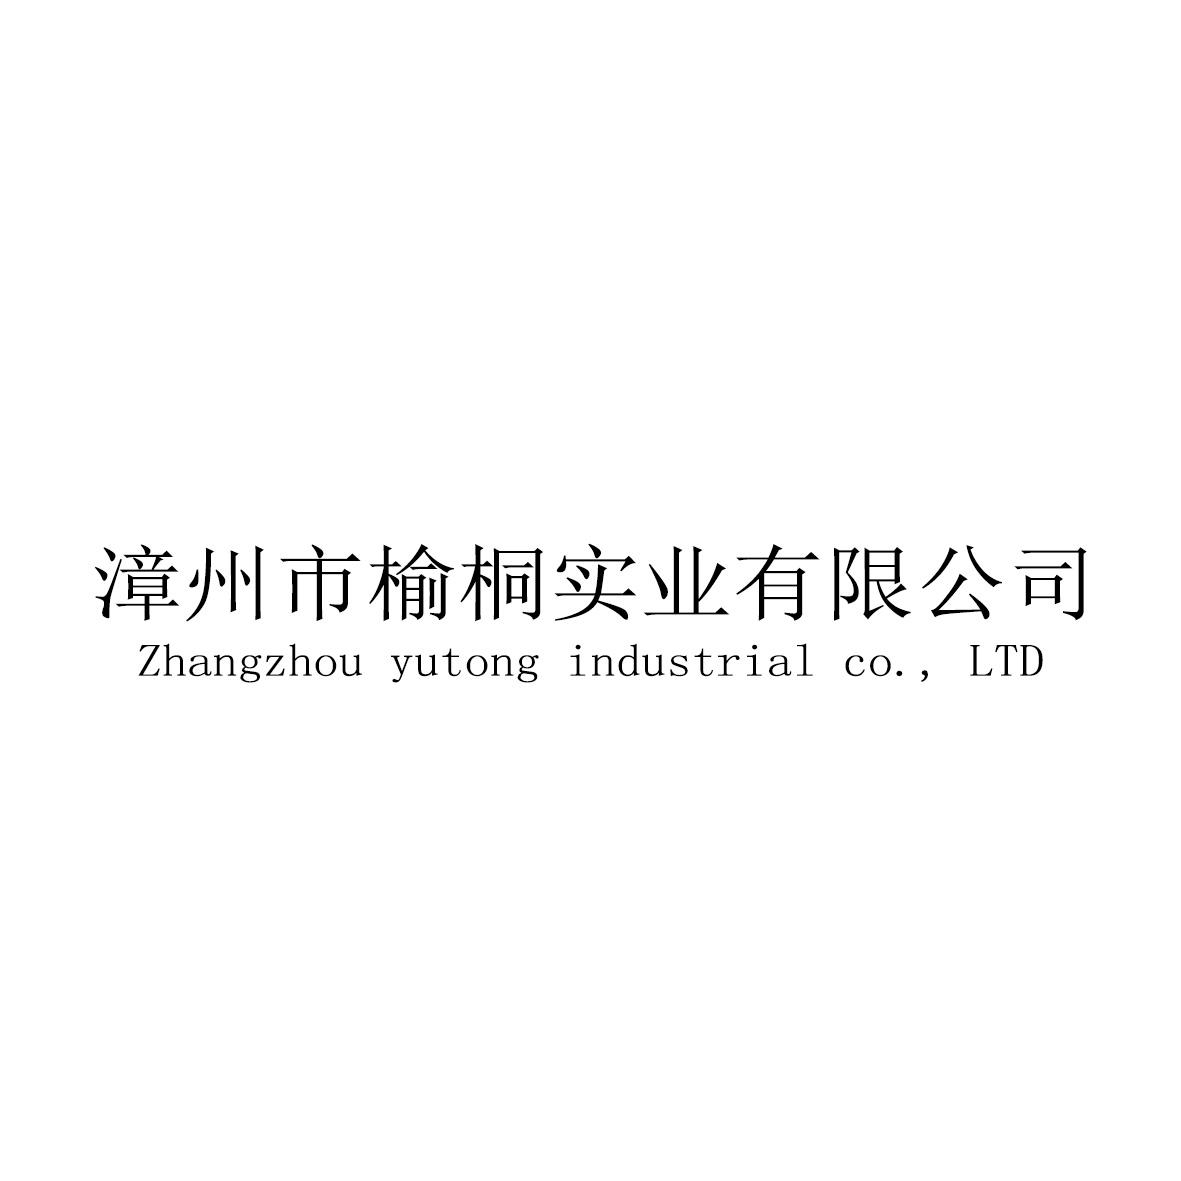 漳州市榆桐实业有限公司 ZHANGZHOU YUTONG INDUSTRIAL CO.， LTDlogo